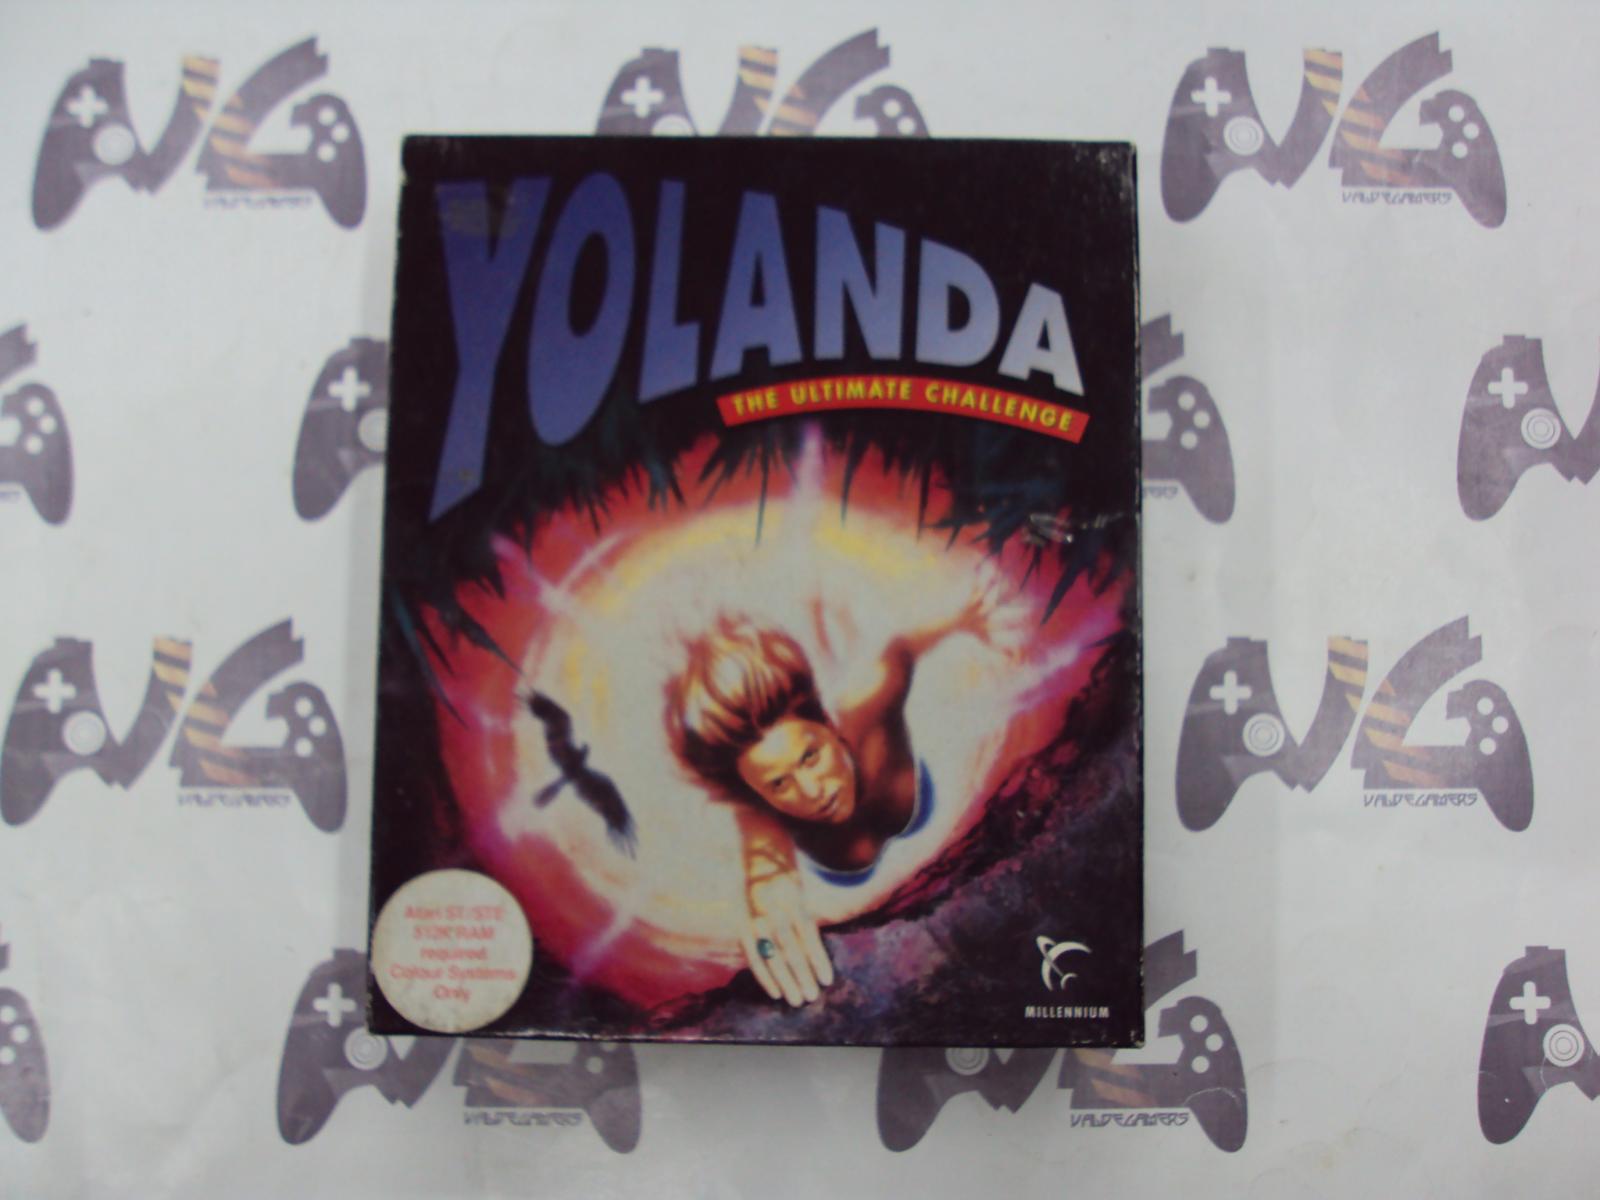 Yolanda the ultimate challenge